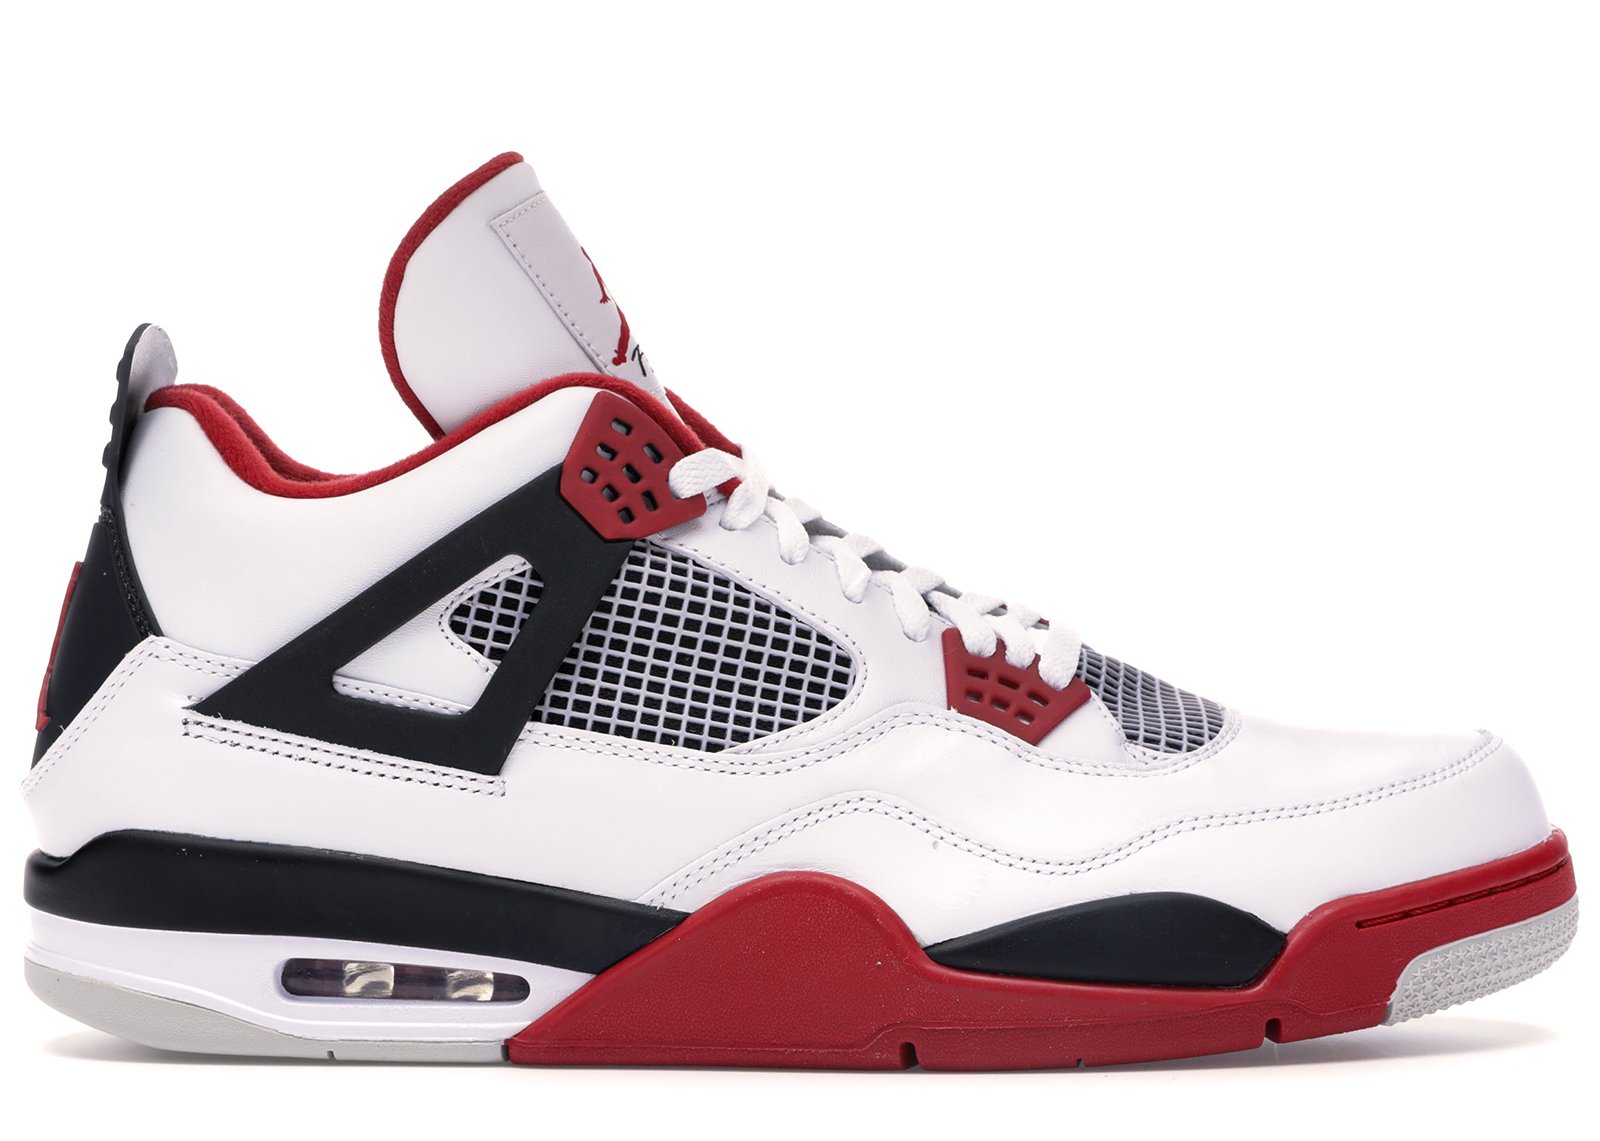 Jordan 4 Retro Fire Red (2012) sneakers